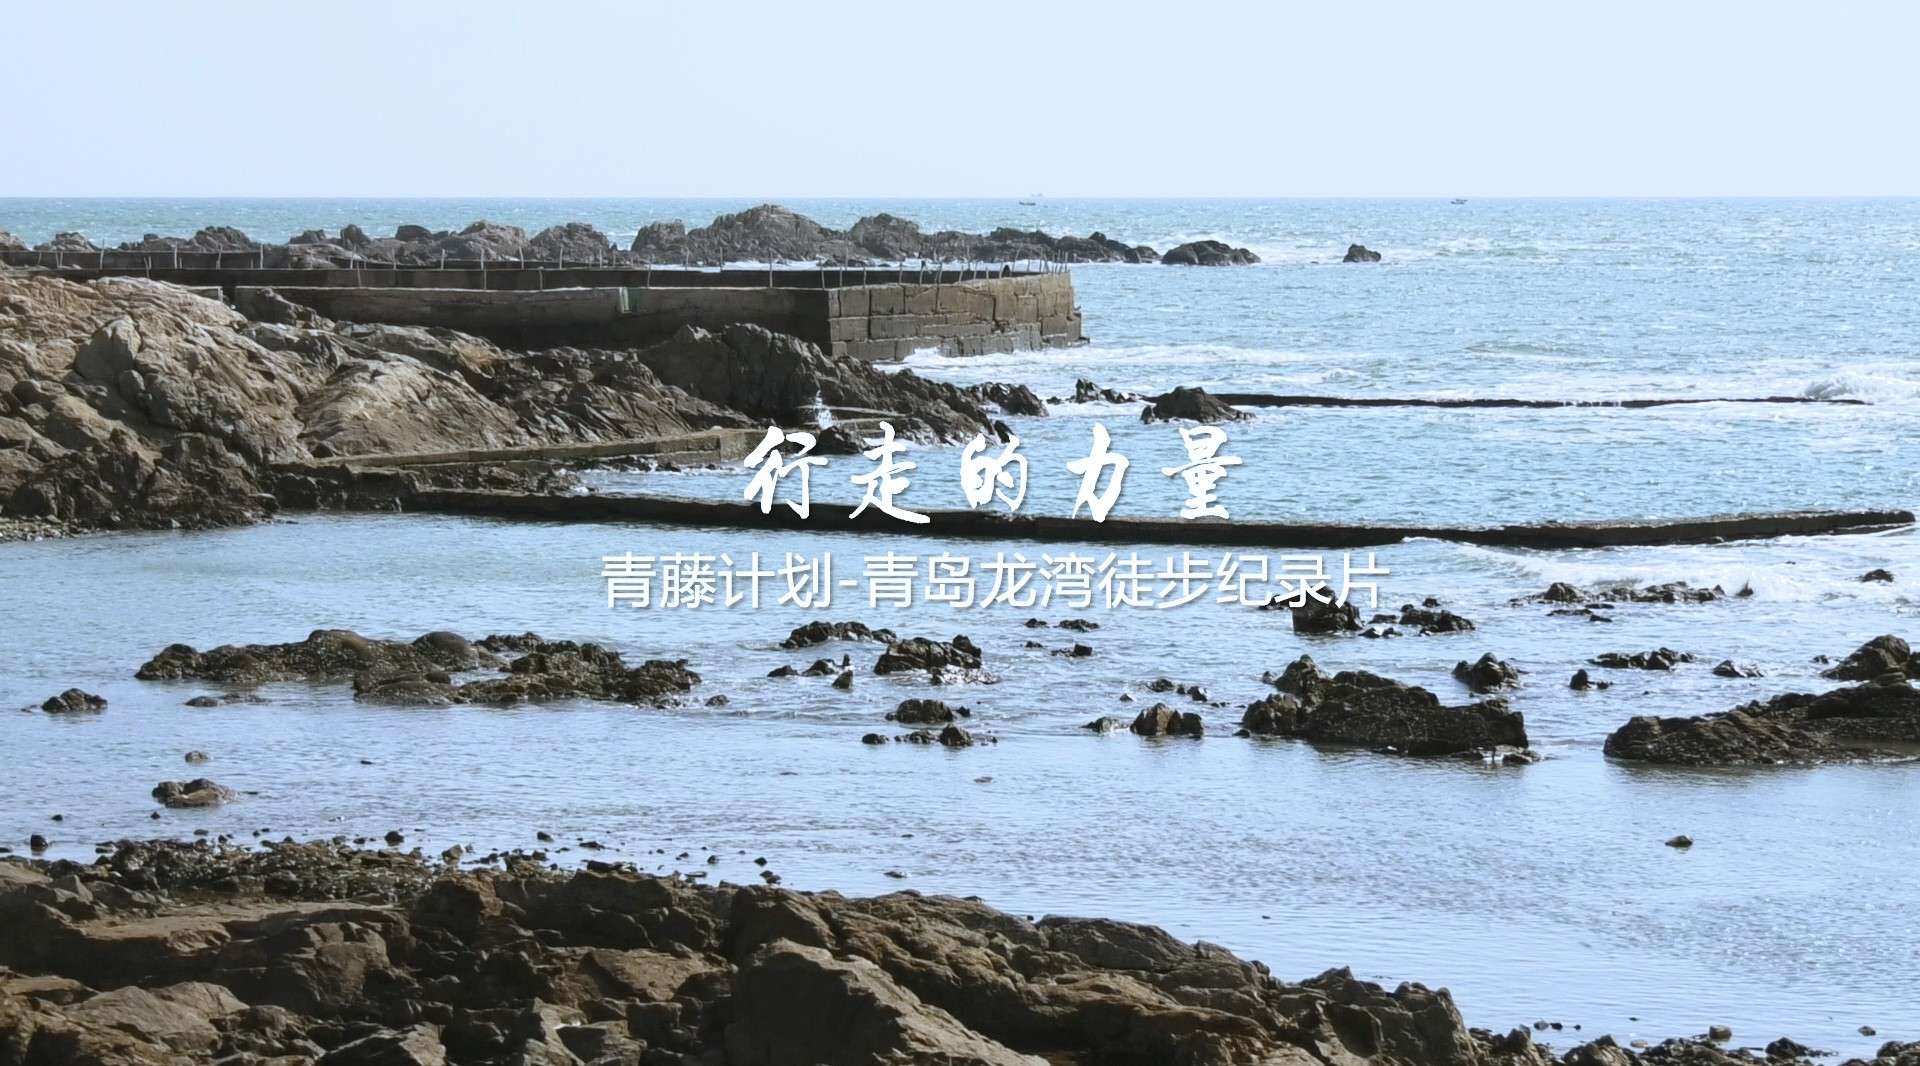 行走的力量-青藤计划青岛龙湾徒步纪录片